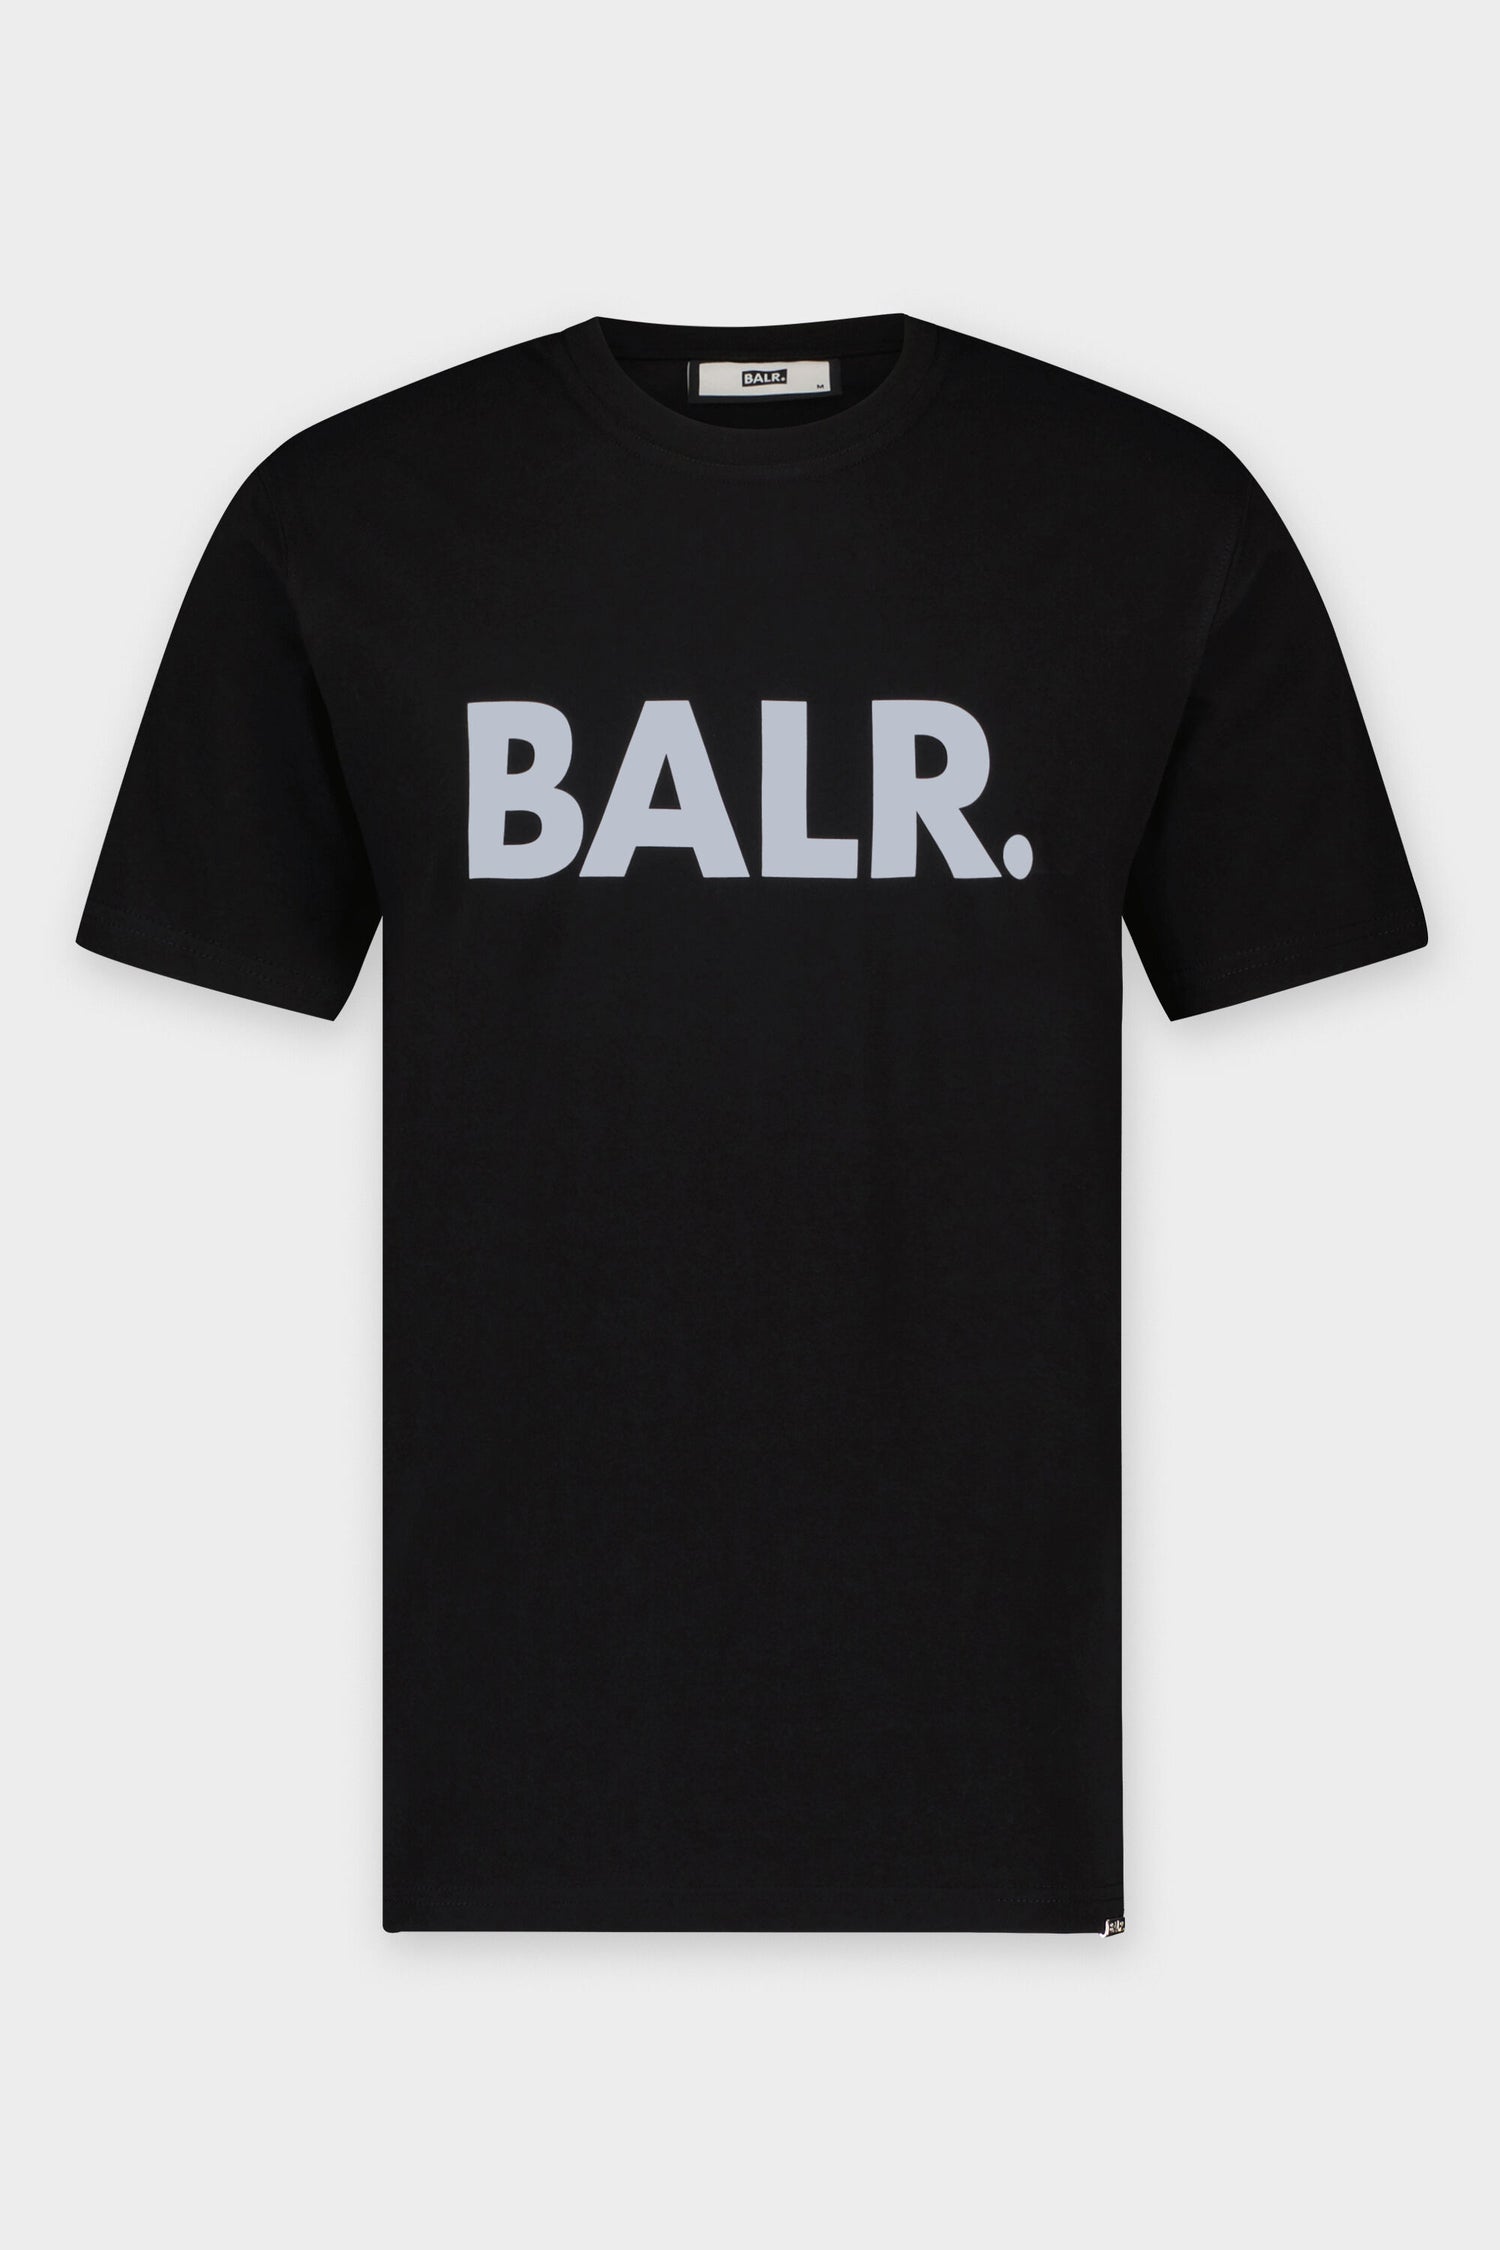 Hvilken en At søge tilflugt støbt Brand Straight T-Shirt Jet Black/Blue – BALR.